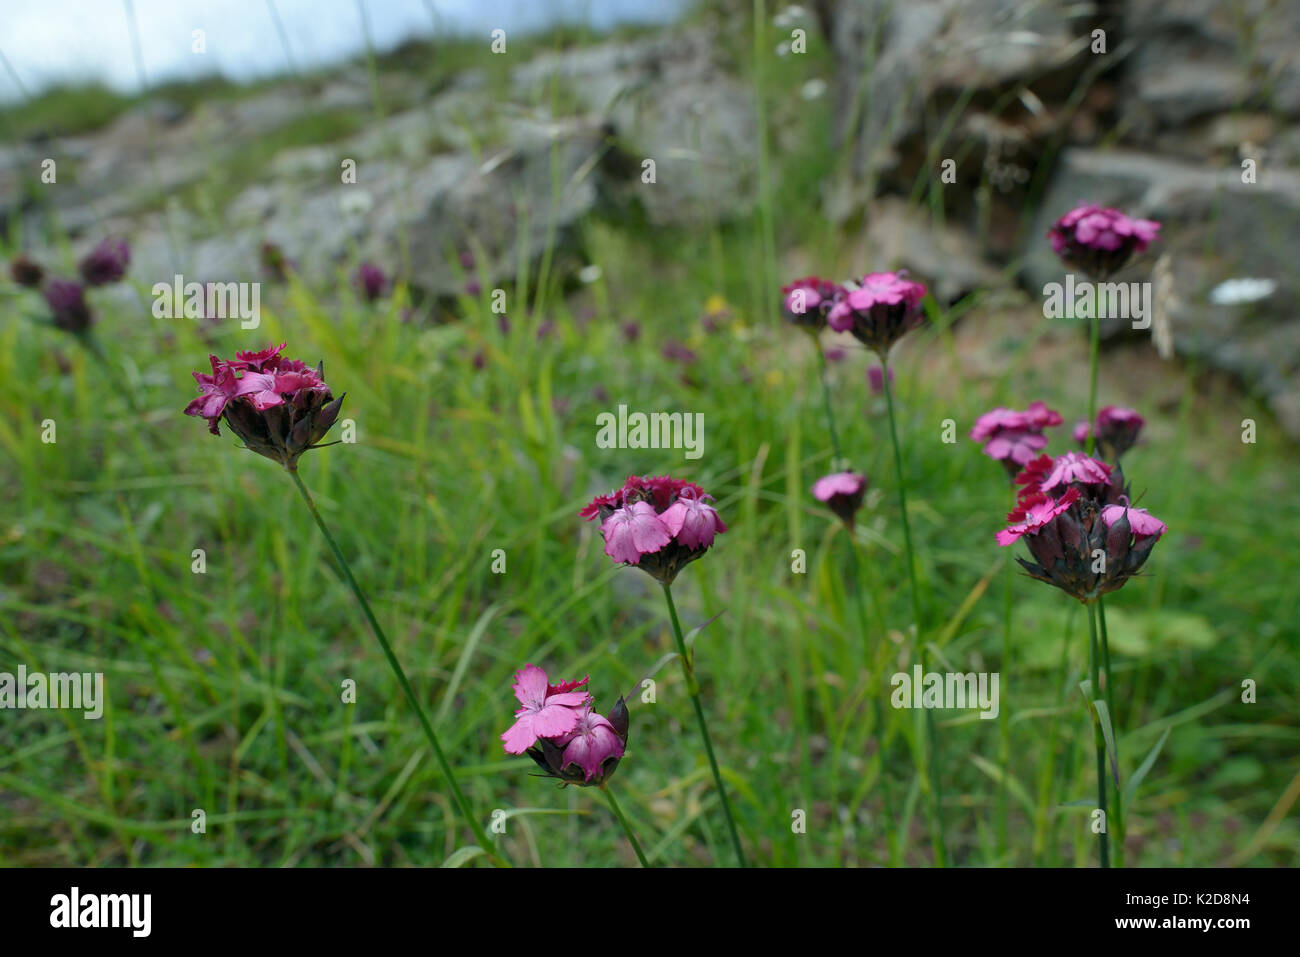 Rosa cartuja/ Cluster-dirigida a rosa (Dianthus carthusianorum) floración entre rocas calizas en el monte Maglic, el Parque Nacional de Sutjeska, Bosnia y Herzegovina, en julio. Foto de stock